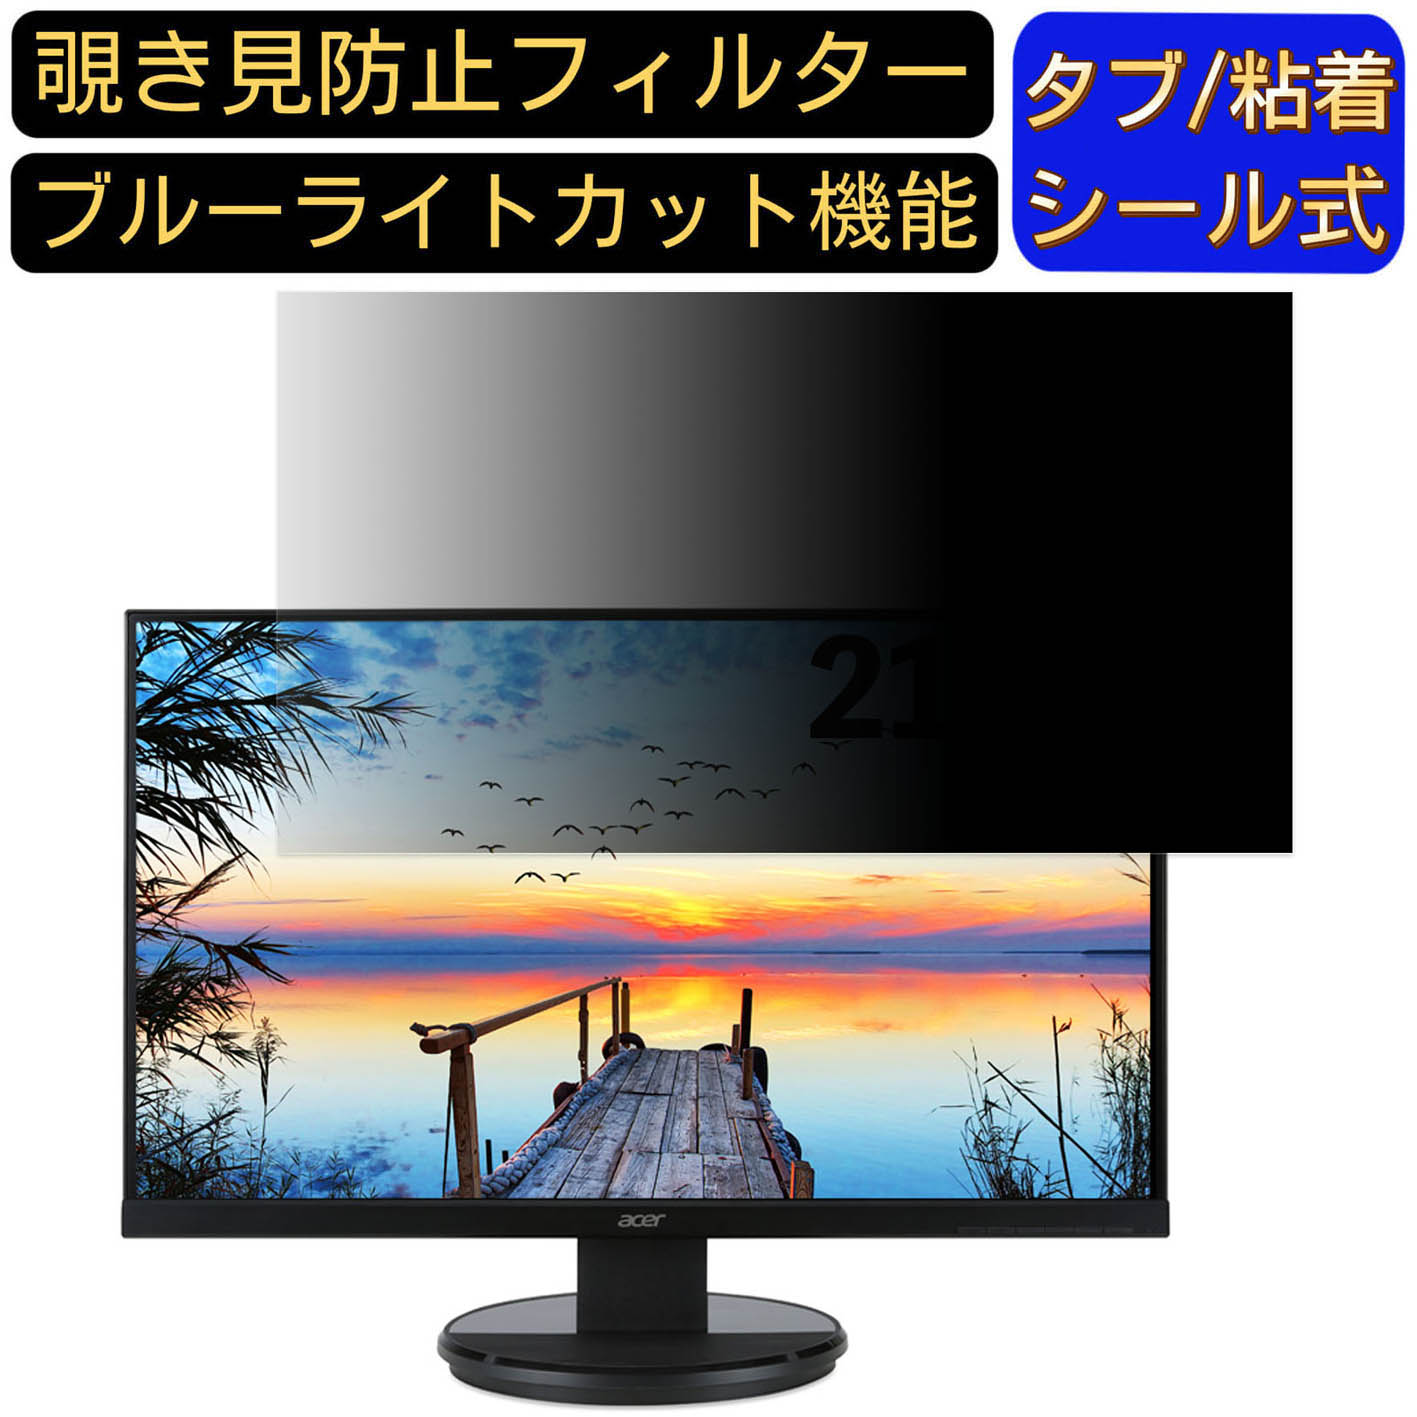 【ポイント2倍】Acer K222HQLbmidx 21.5イ